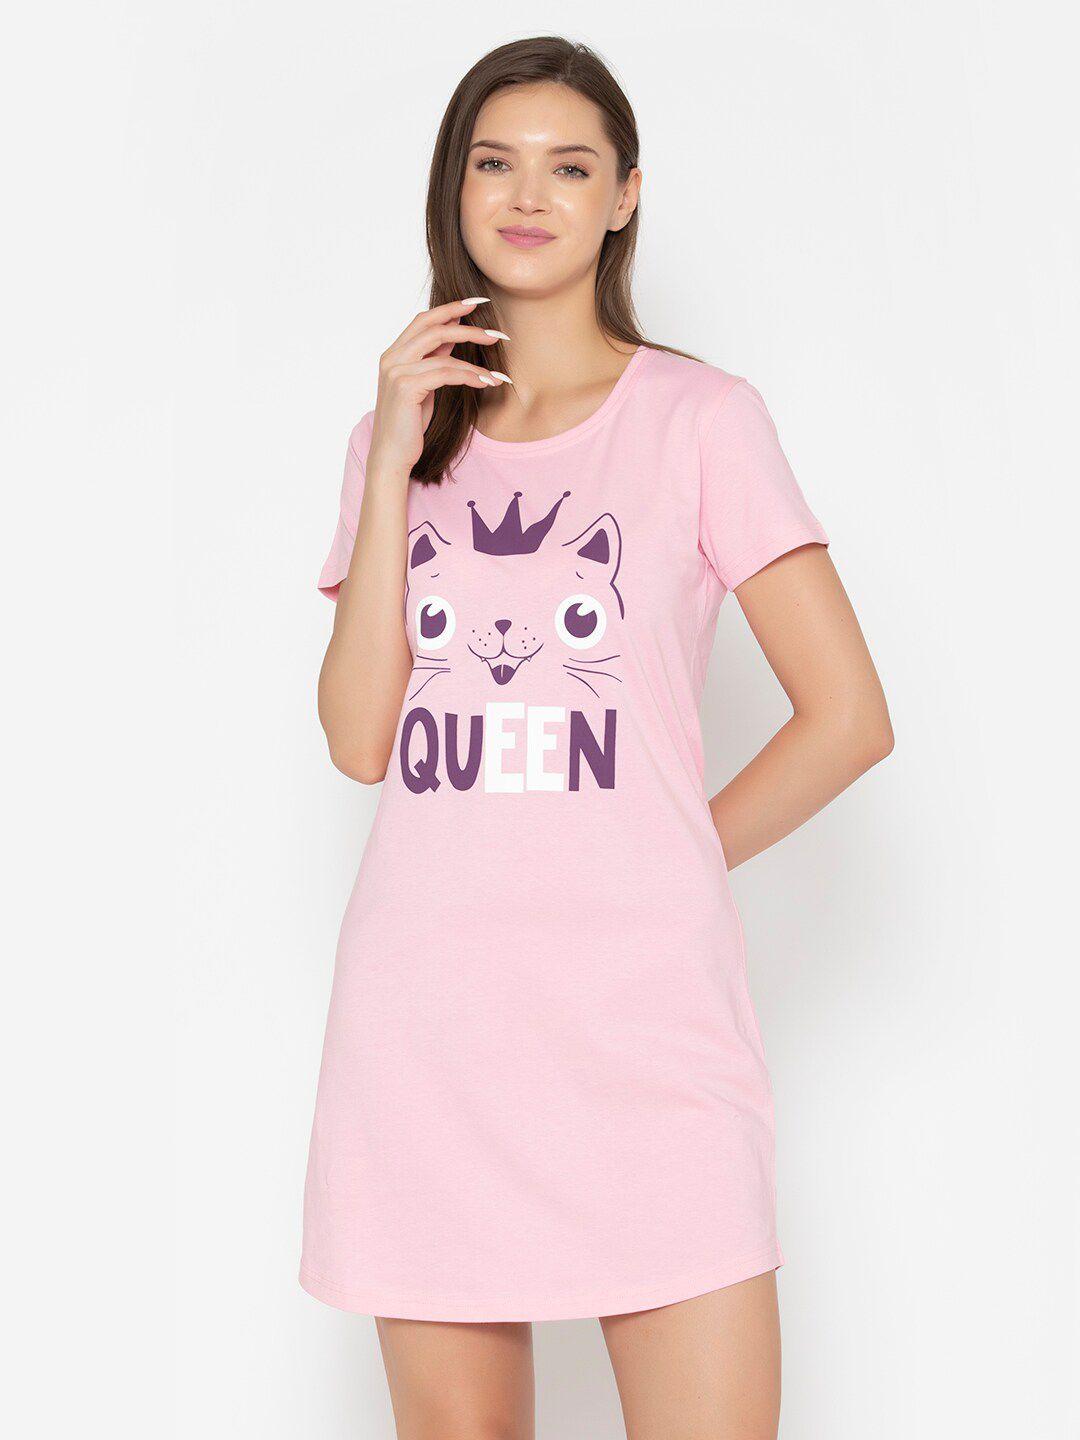 vami-pink-&-white-printed-t-shirt-nightdress